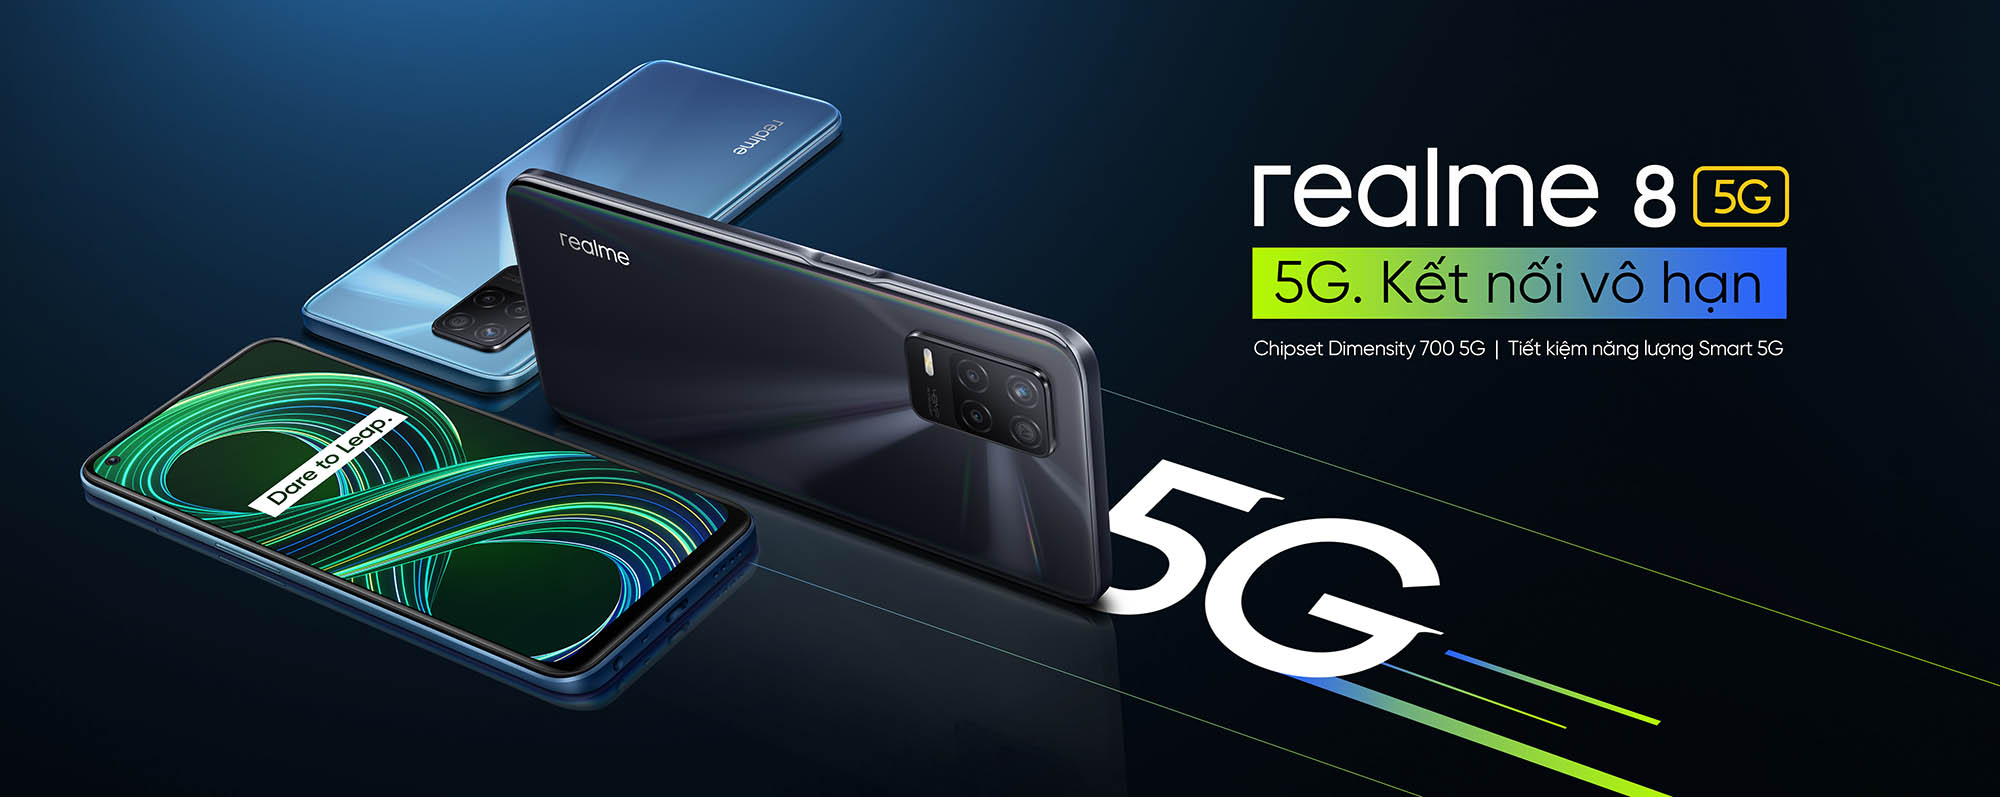 realme 8 5G chính thức ra mắt, mang vi xử lý 5G thế hệ mới với thiết kế sang trọng siêu mỏng nhẹ